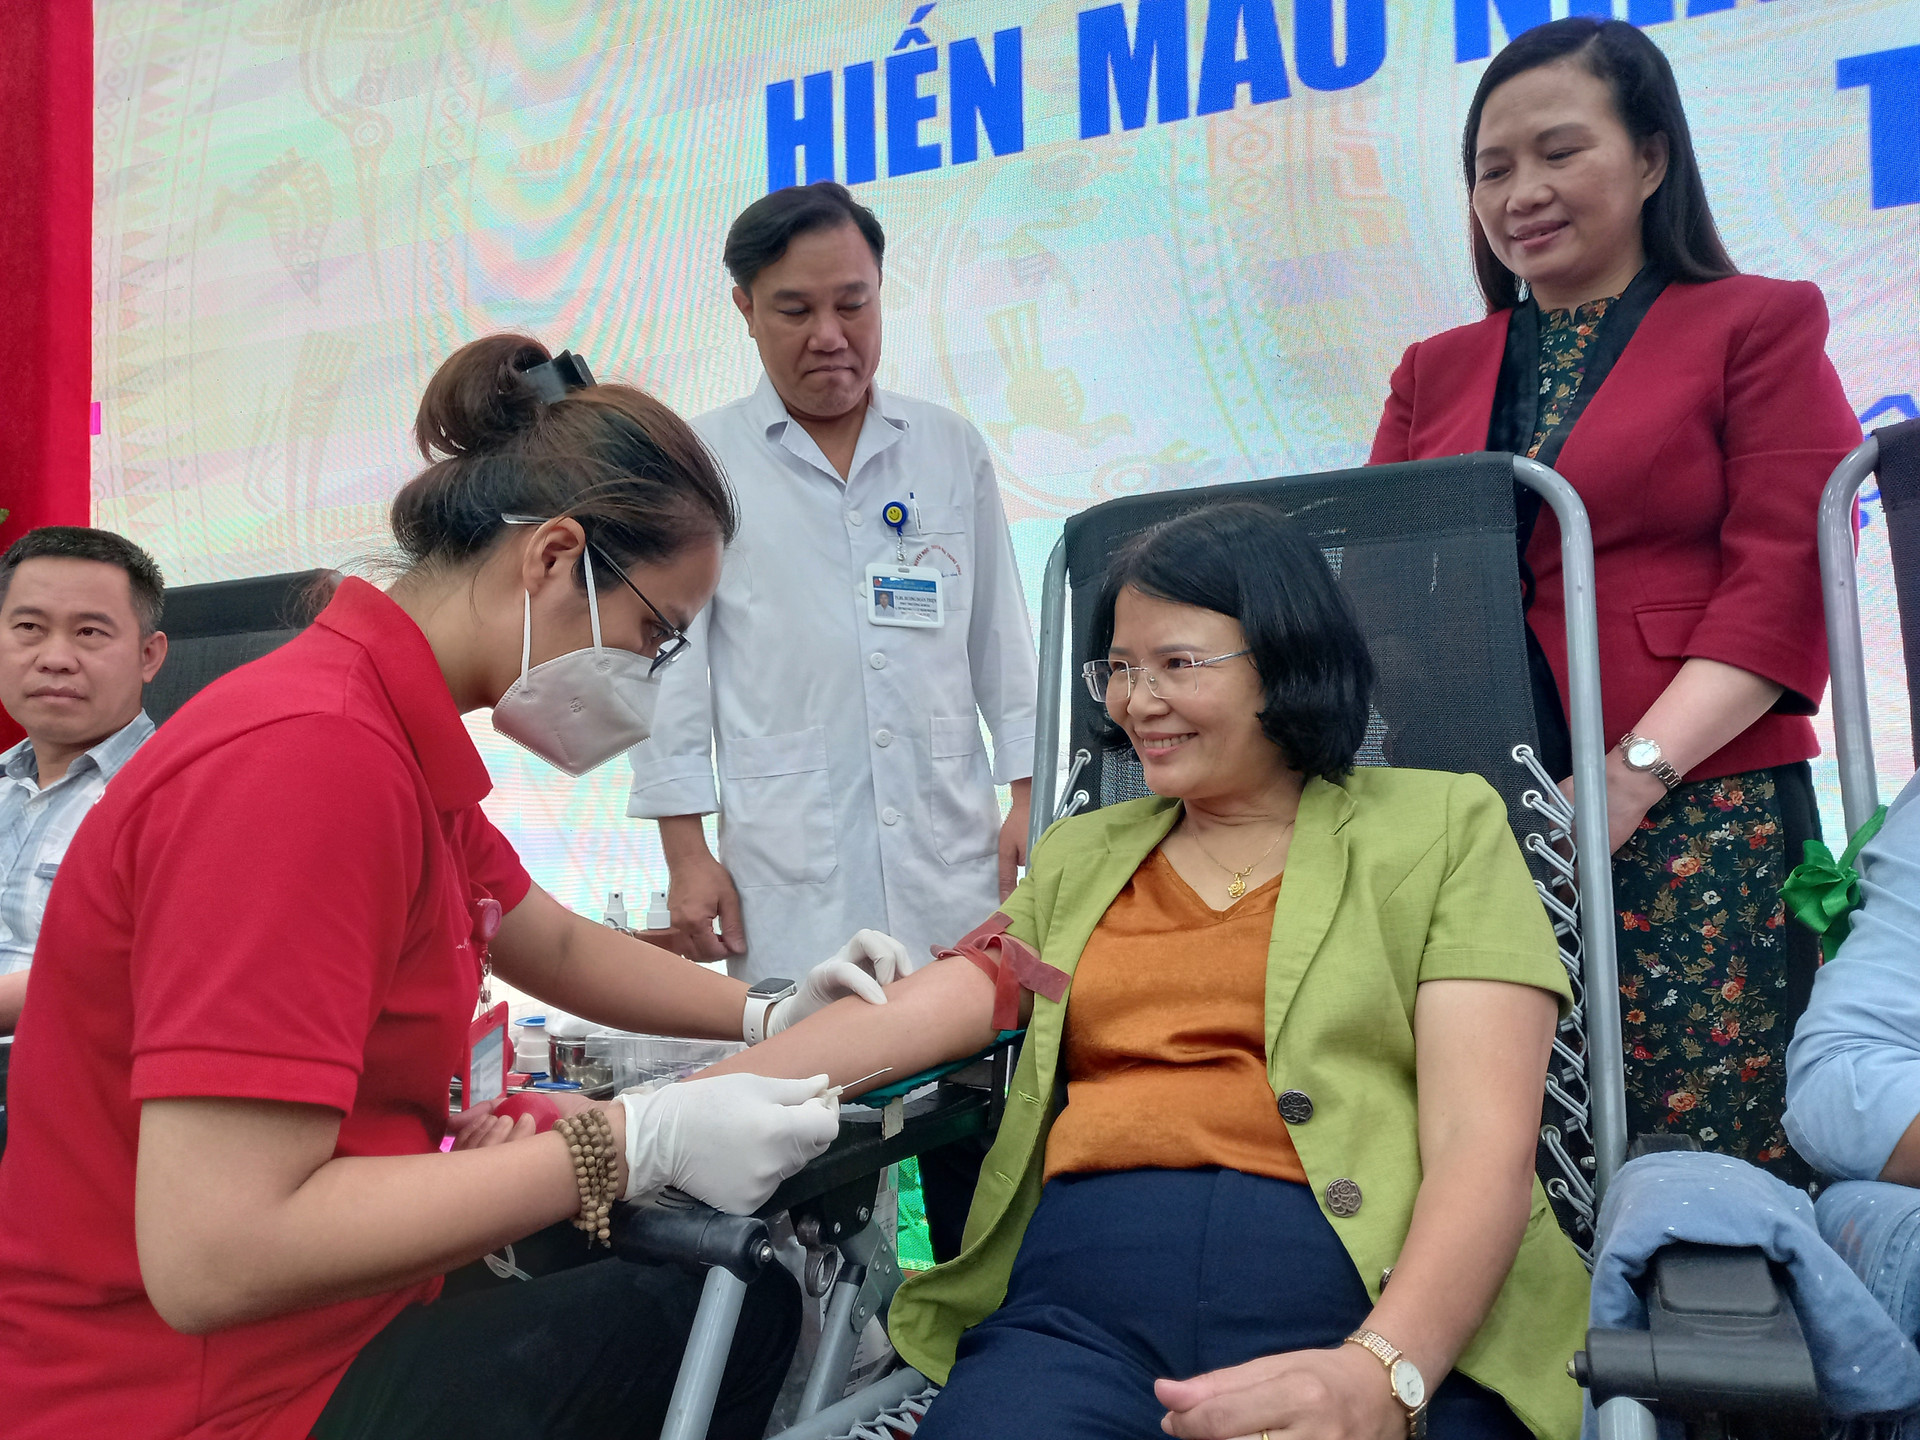 Bà Nguyễn Thị Kim Dung, Phó Chủ tịch Ủy ban MTTQ Việt Nam Thành phố Hà Nội tham gia hiến máu nhân đạo.